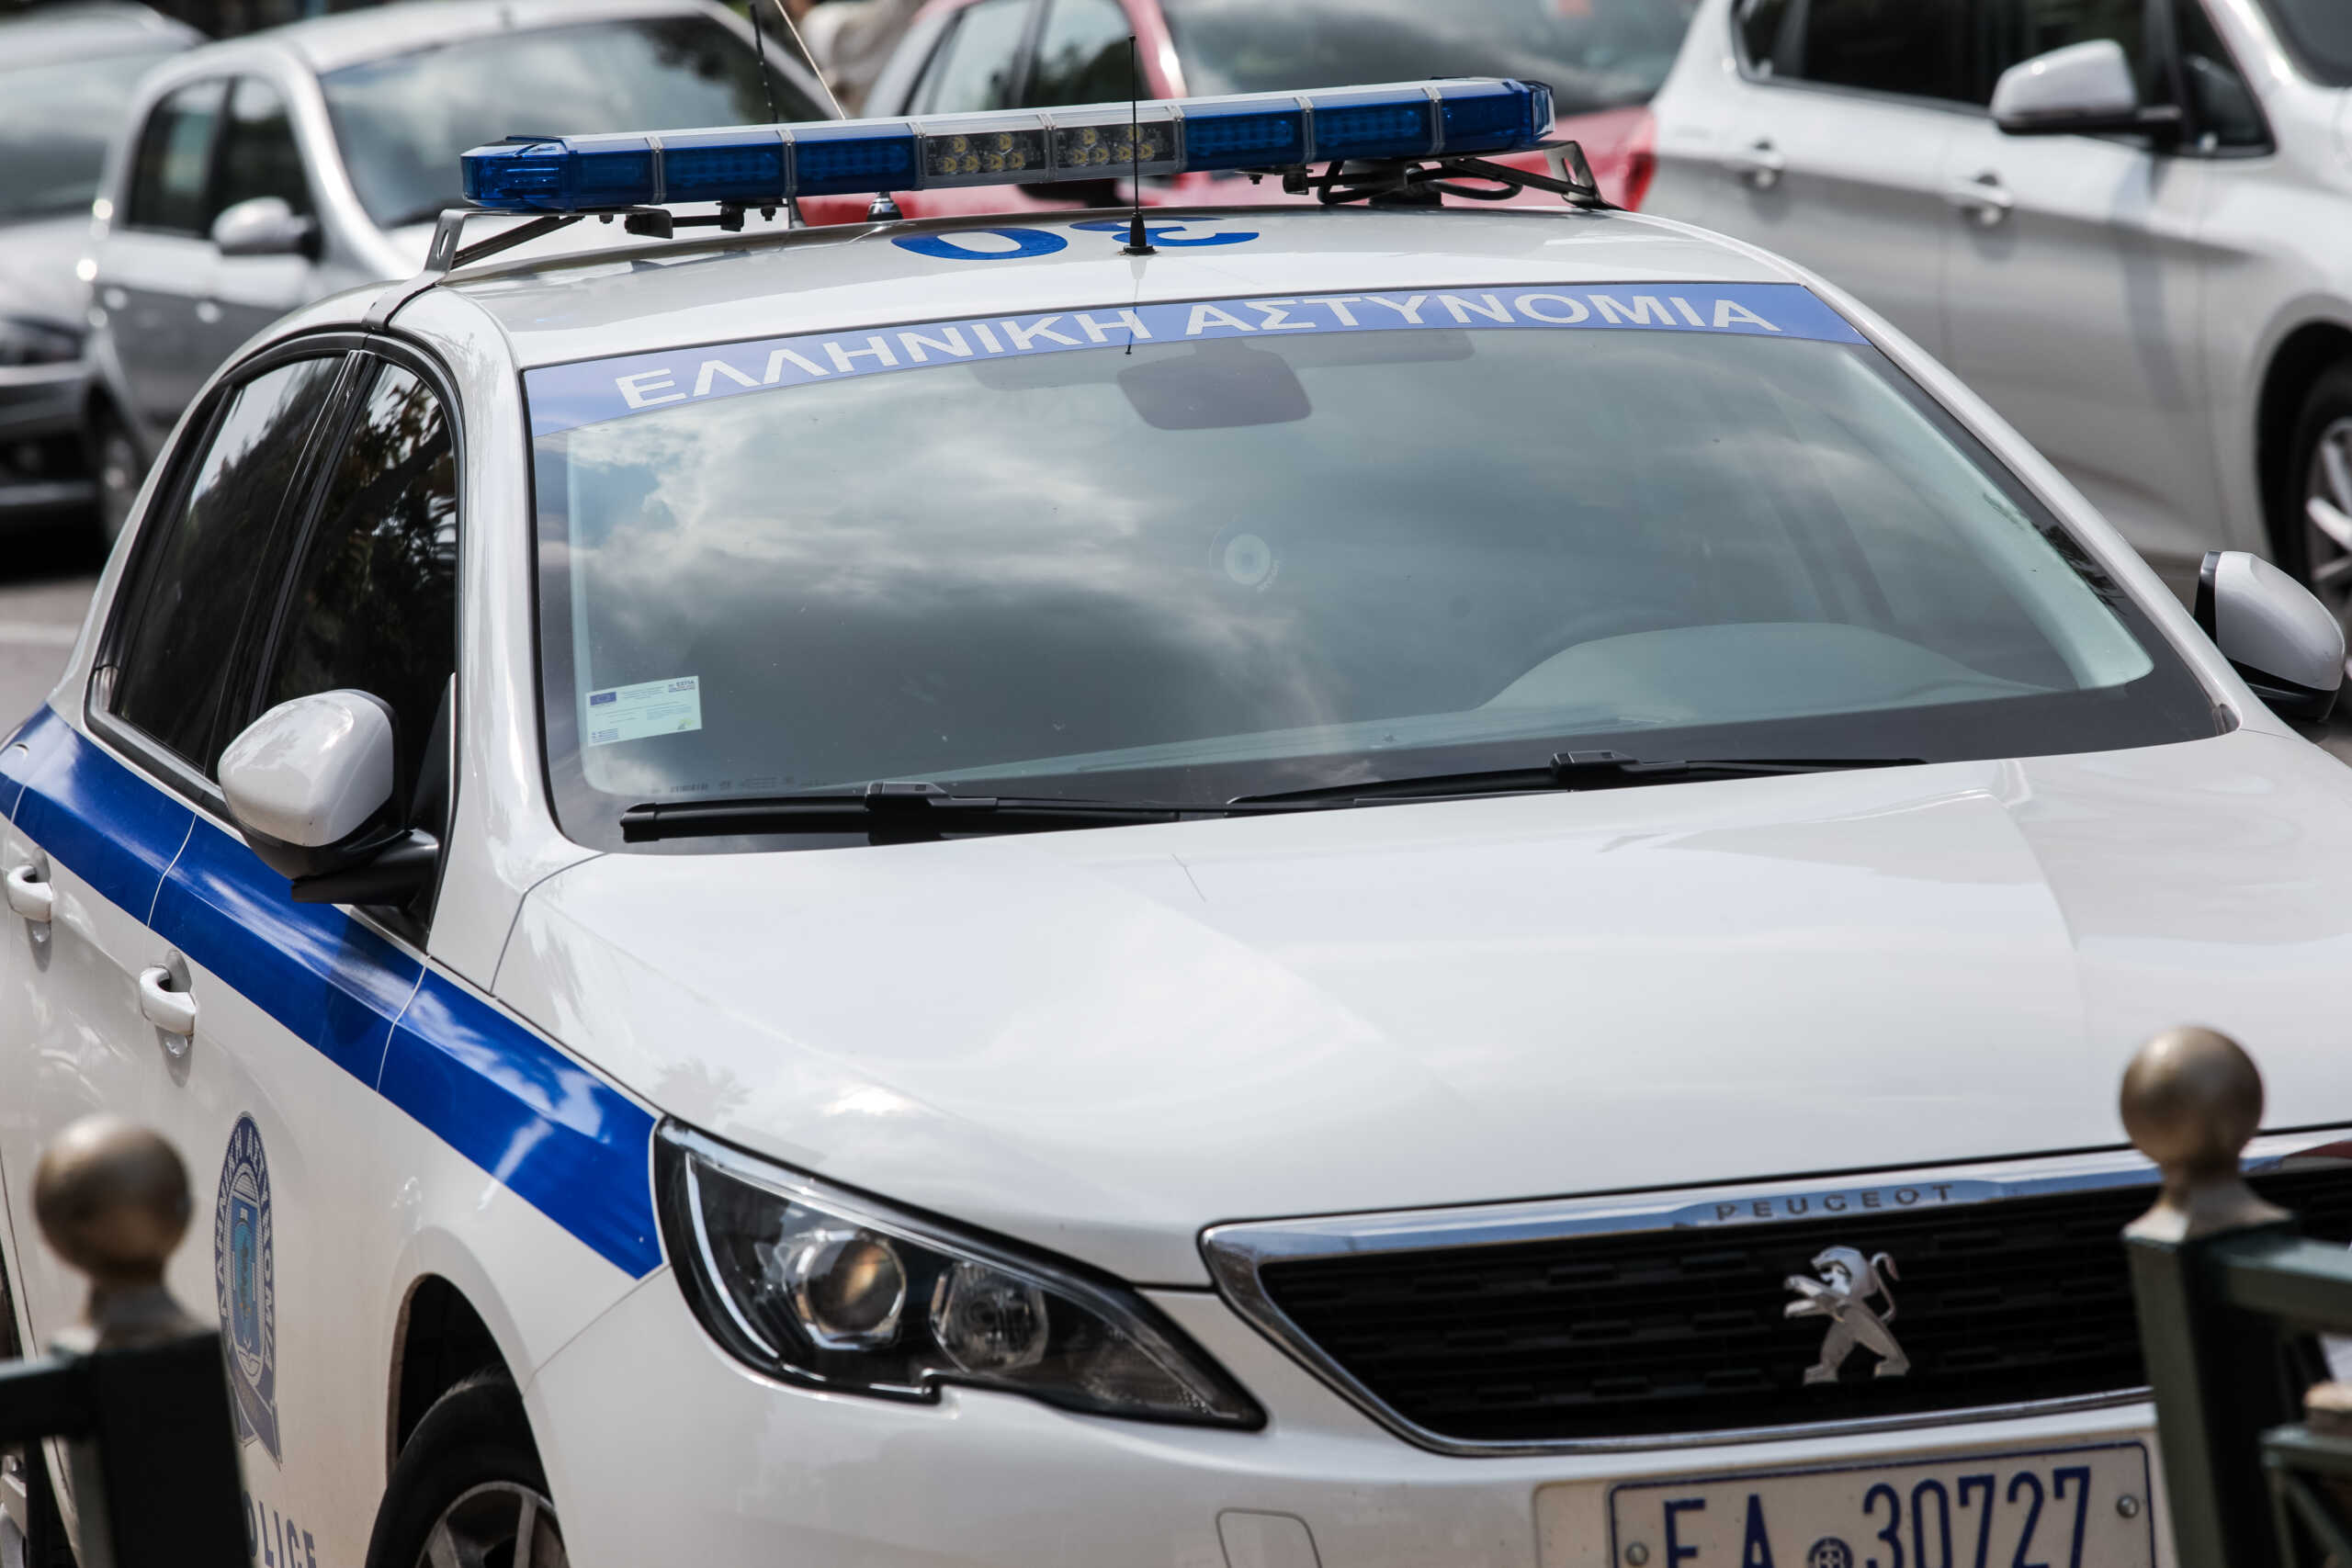 Βύρωνας: Συνελήφθη 48χρονος για ναρκωτικά – Είχε εκδοθεί ευρωπαϊκό ένταλμα σύλληψης από το Βέλγιο